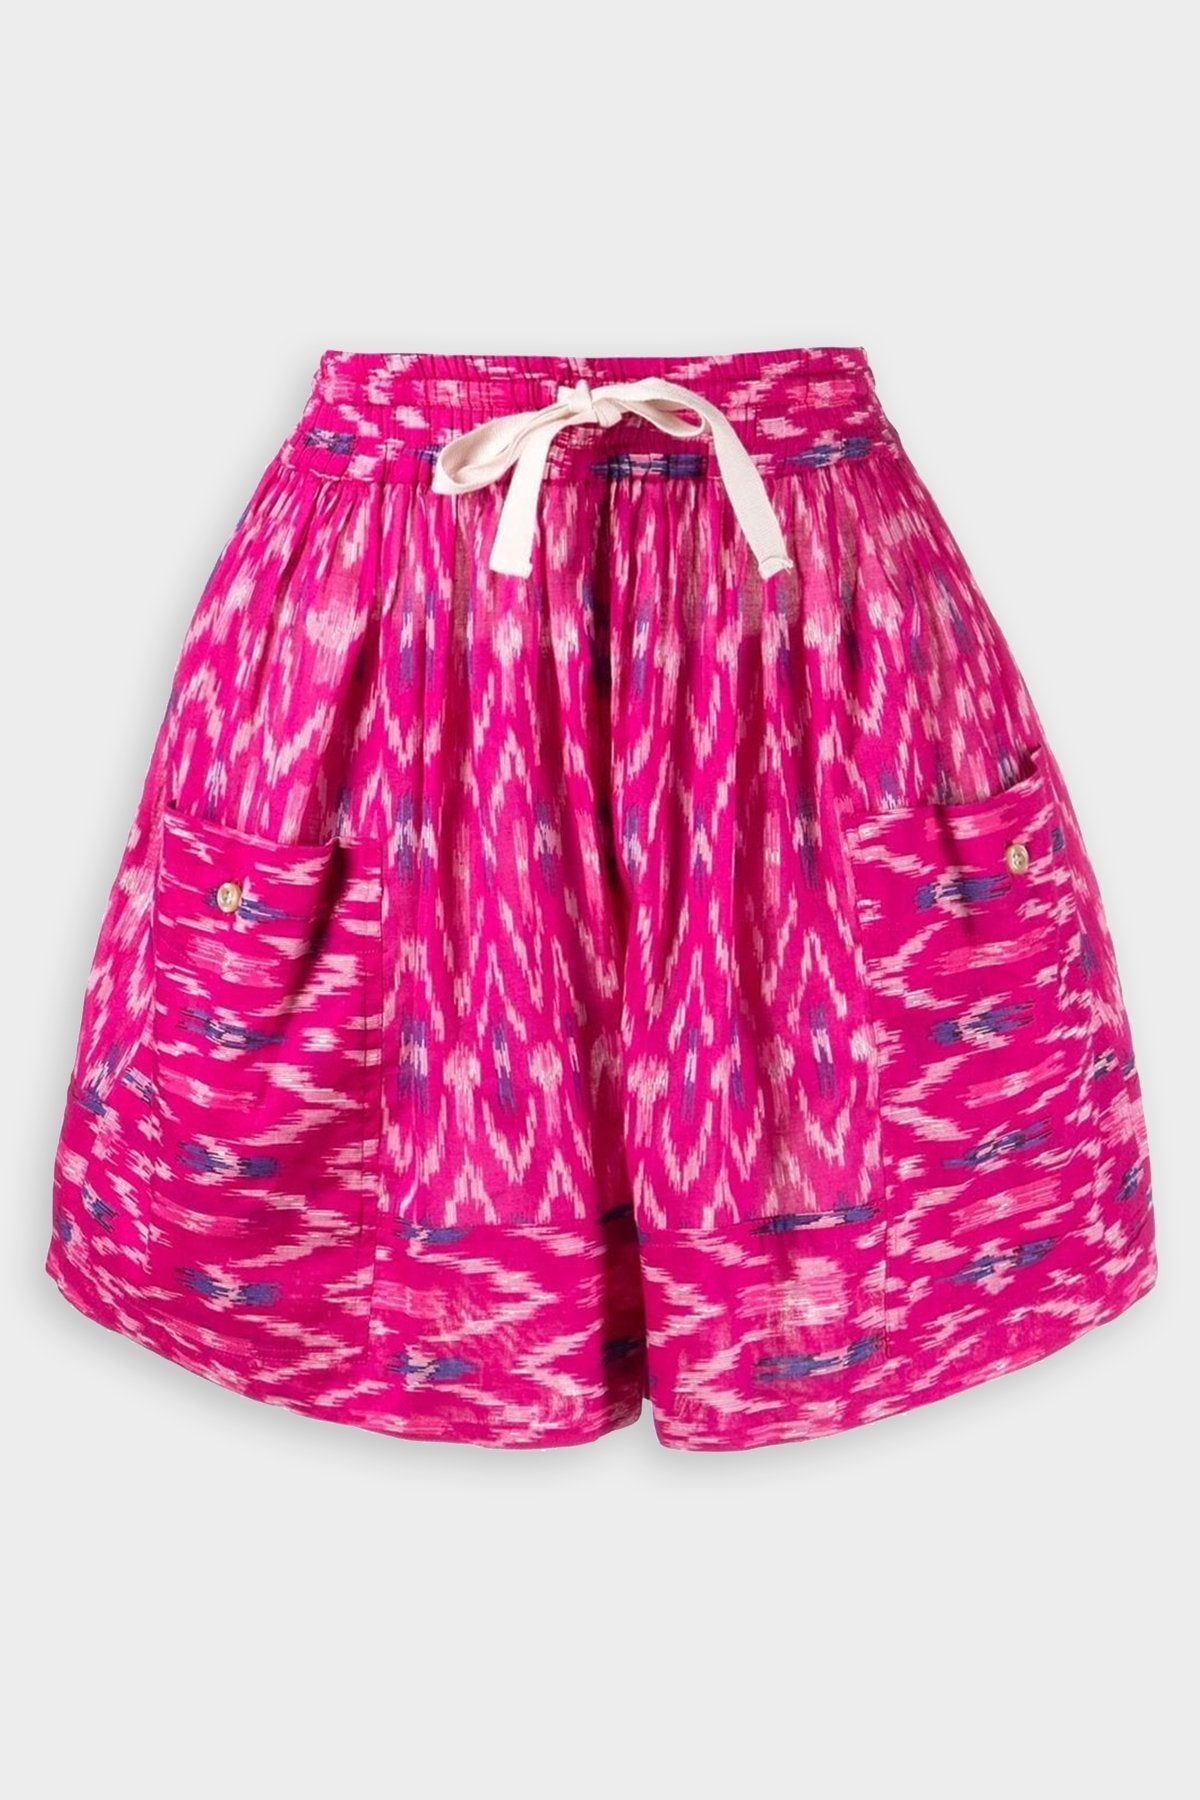 Ledoria Shorts in Fuchsia - shop-olivia.com